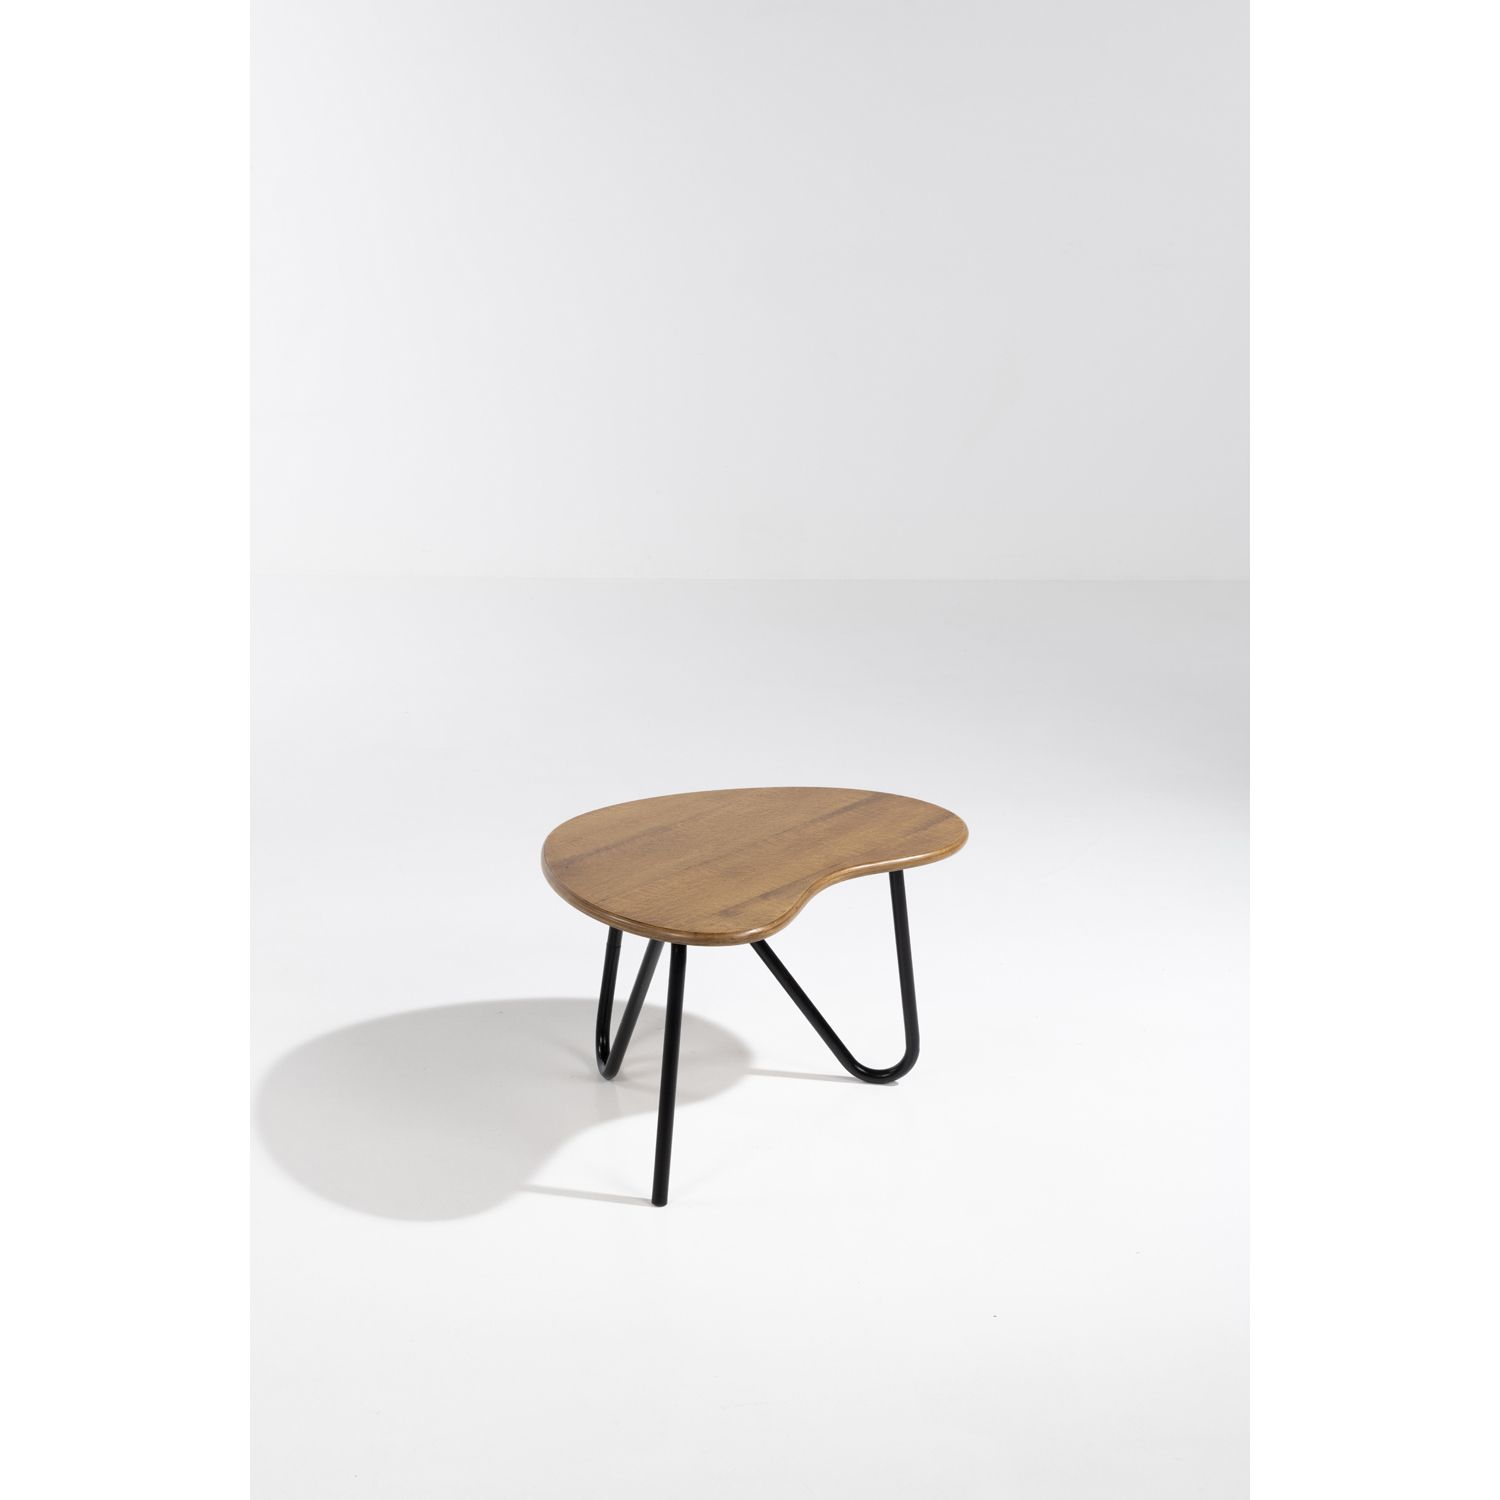 Ƒ Pierre Guariche (1926-1995) Table modèle 'Prefacto' ƒ 皮埃尔-瓜里切(1926-1995)

表模型 &hellip;